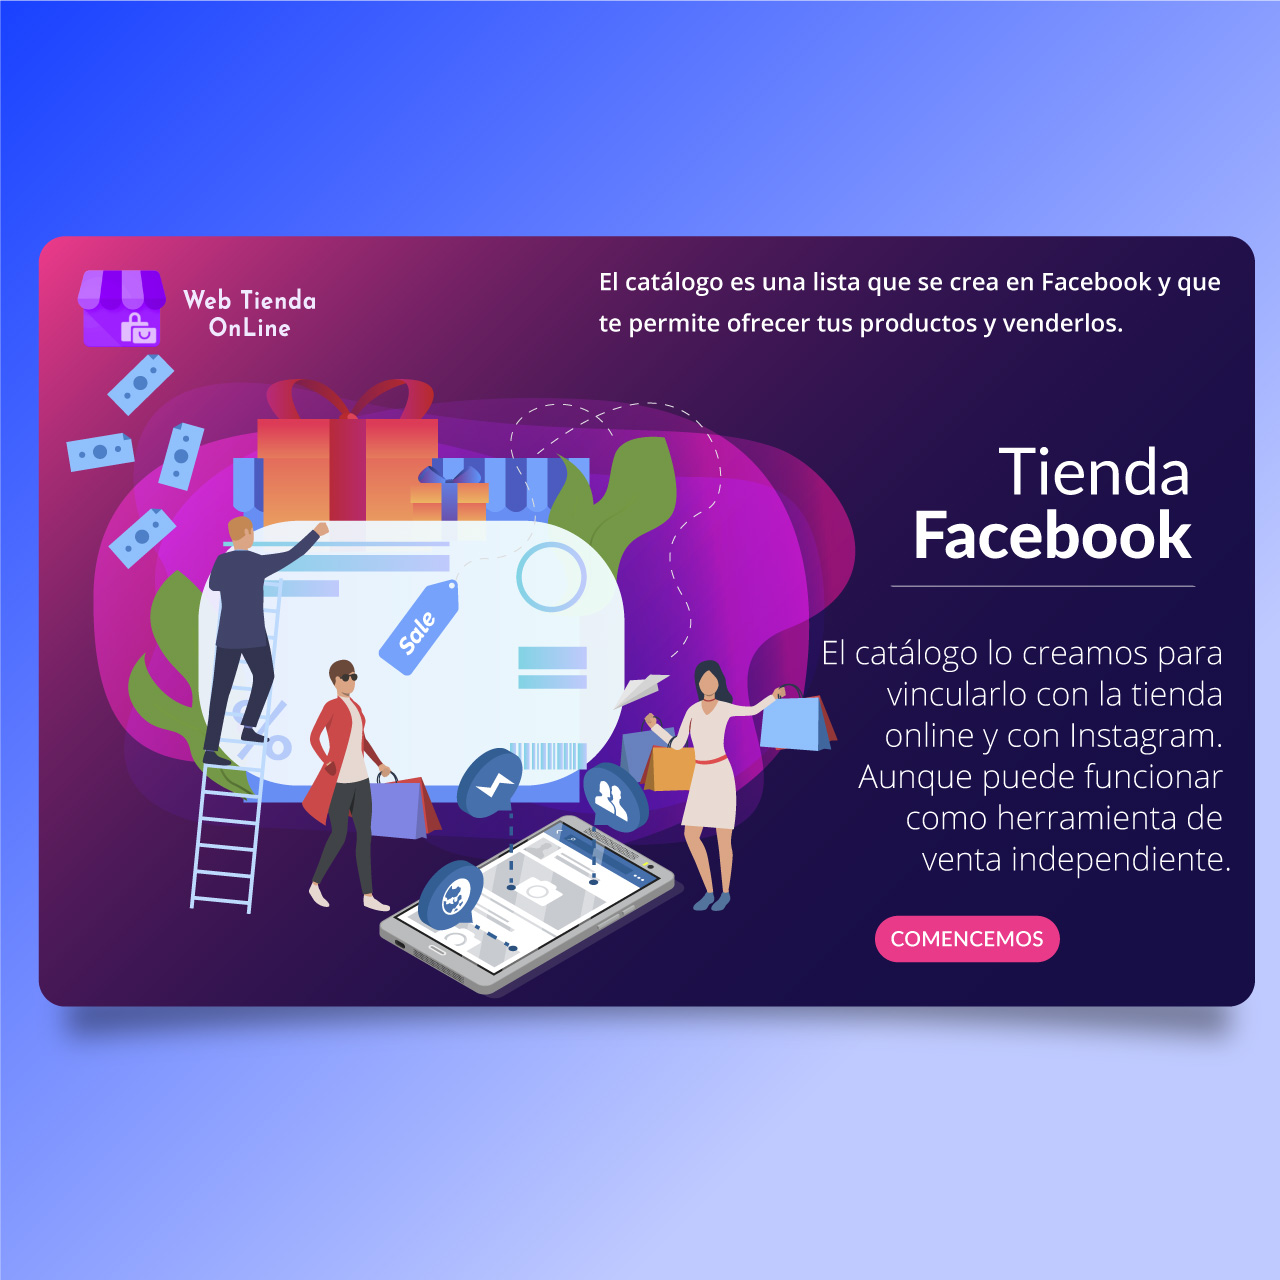 Conectamos tu tienda online con elcatálogo de Facebook - Web Tienda Online Uruguay